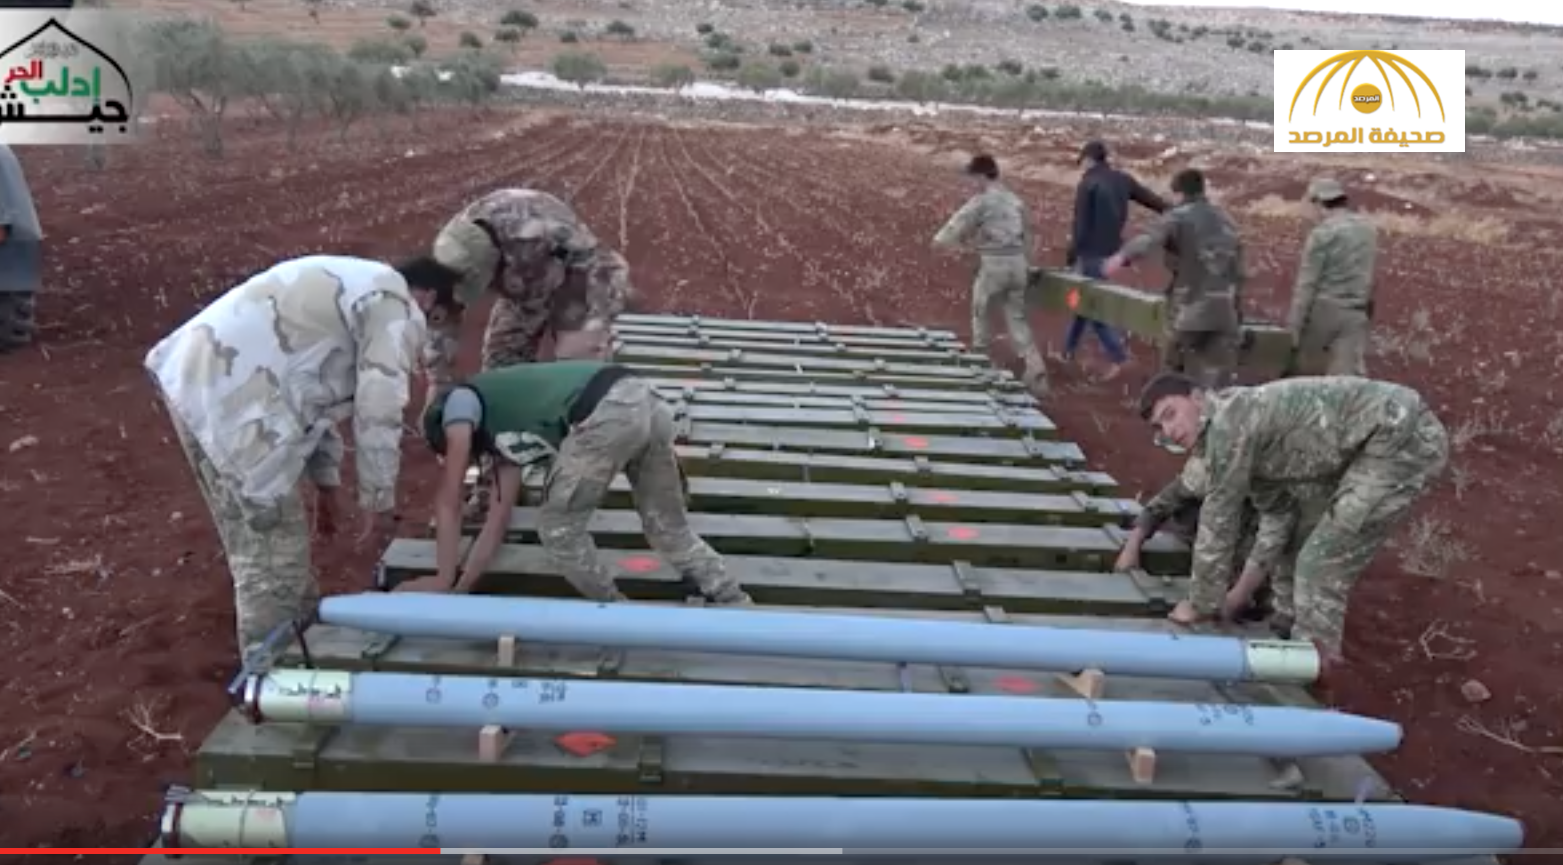 فيديو : شاهد صواريخ "غراد" بمدى 40 كم بيد الجيش السوري الحر